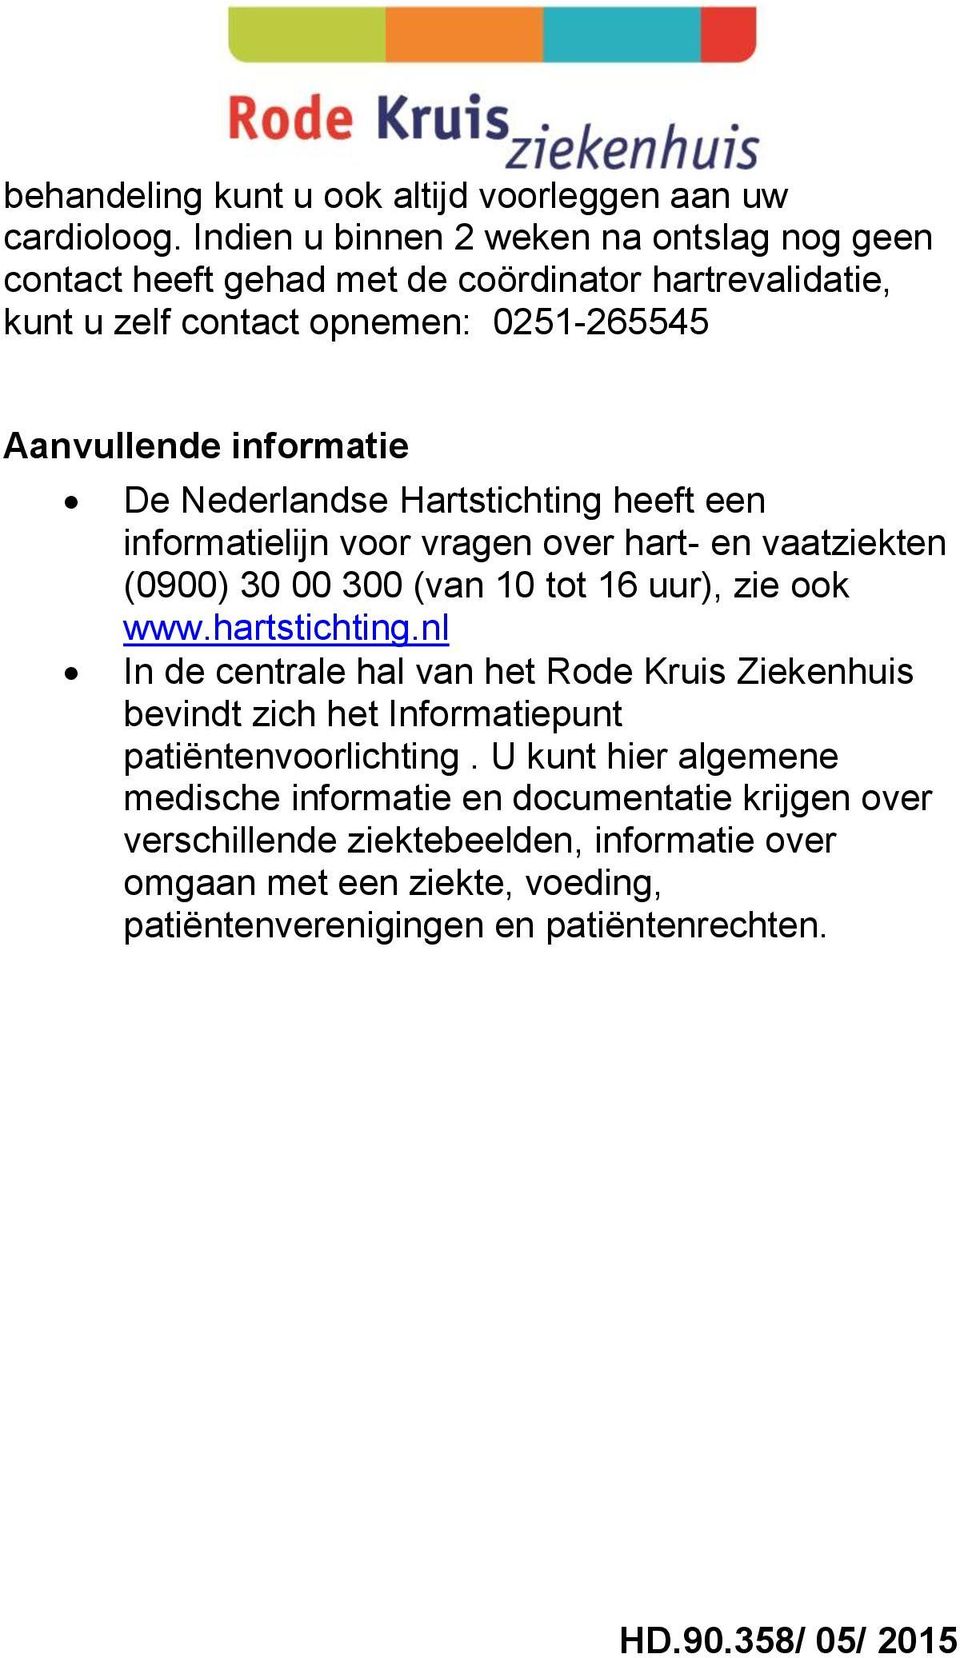 Nederlandse Hartstichting heeft een informatielijn voor vragen over hart- en vaatziekten (0900) 30 00 300 (van 10 tot 16 uur), zie ook www.hartstichting.